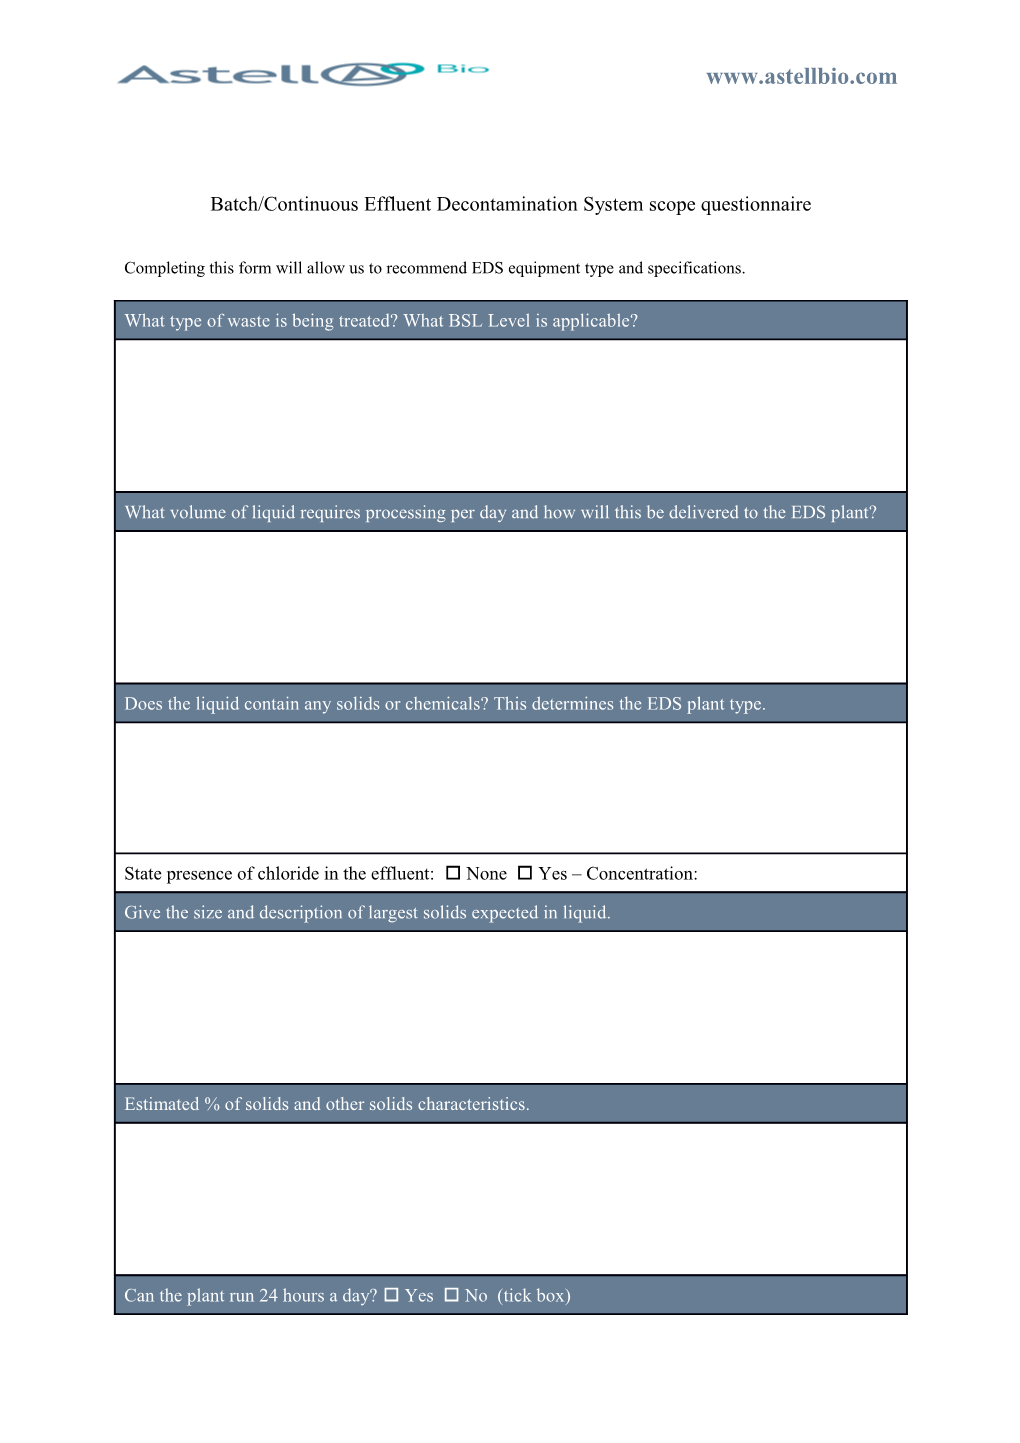 Batch/Continuous Effluent Decontamination System Scope Questionnaire